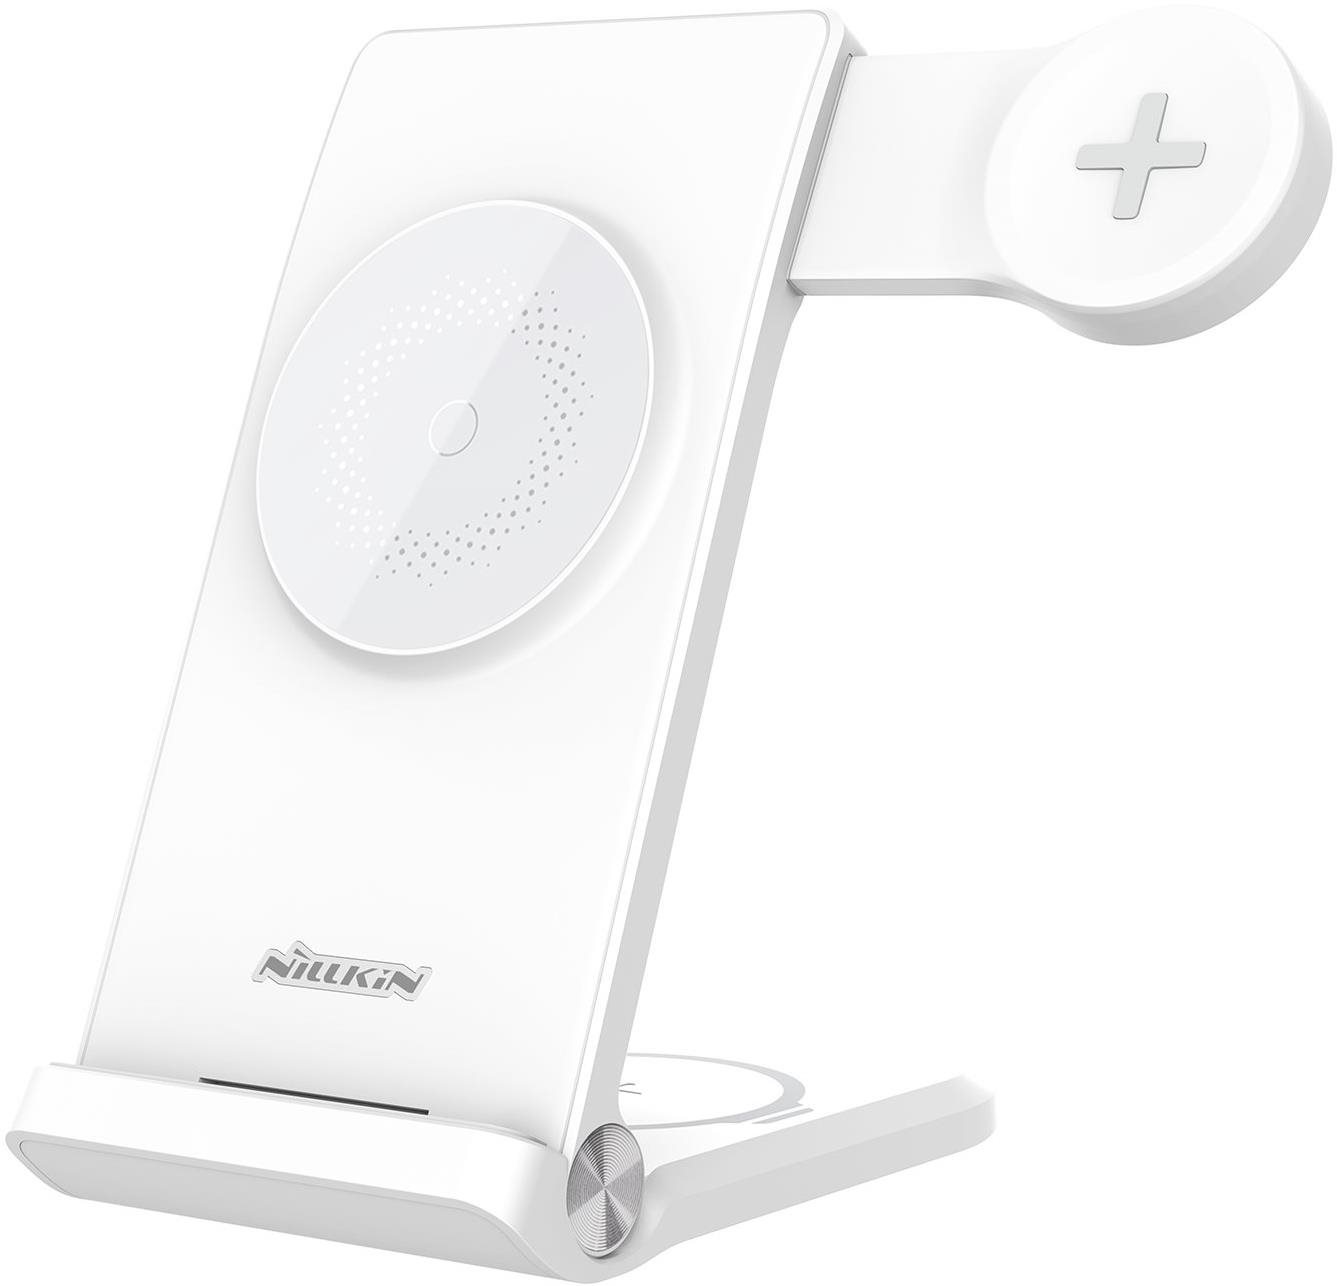 Töltőállvány Nillkin PowerTrio 3 az 1-ben MagSafe vezeték nélküli töltő Samsung Watch-hoz White